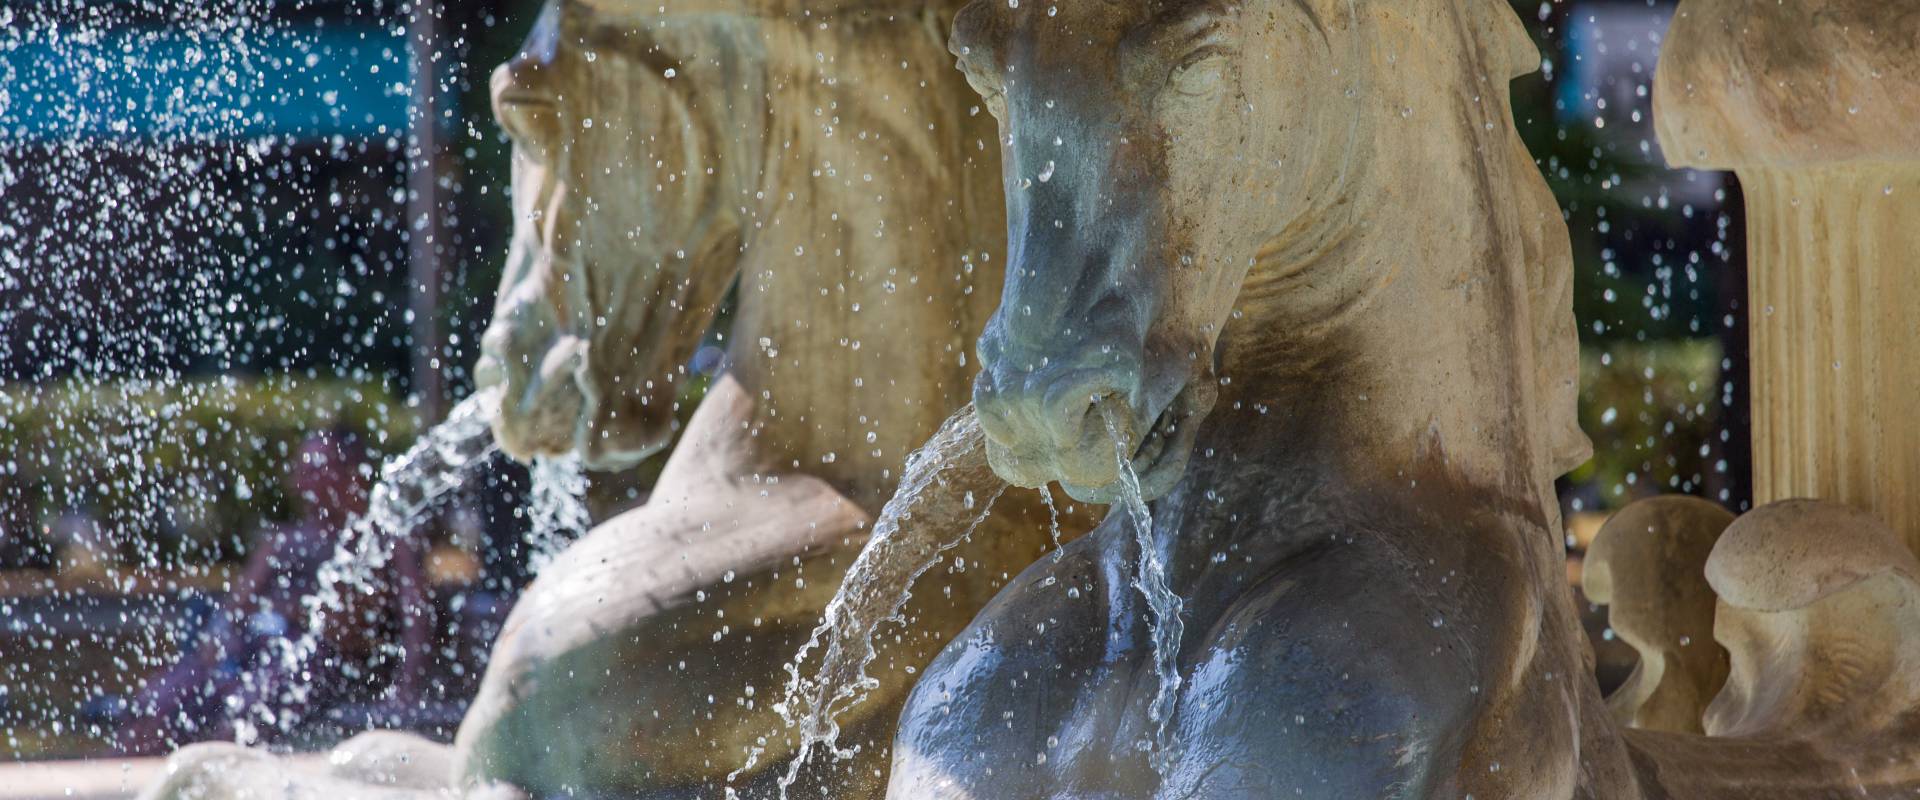 Rimini Fontana dei Quattro Cavalli Particolare foto di Laura Monetini